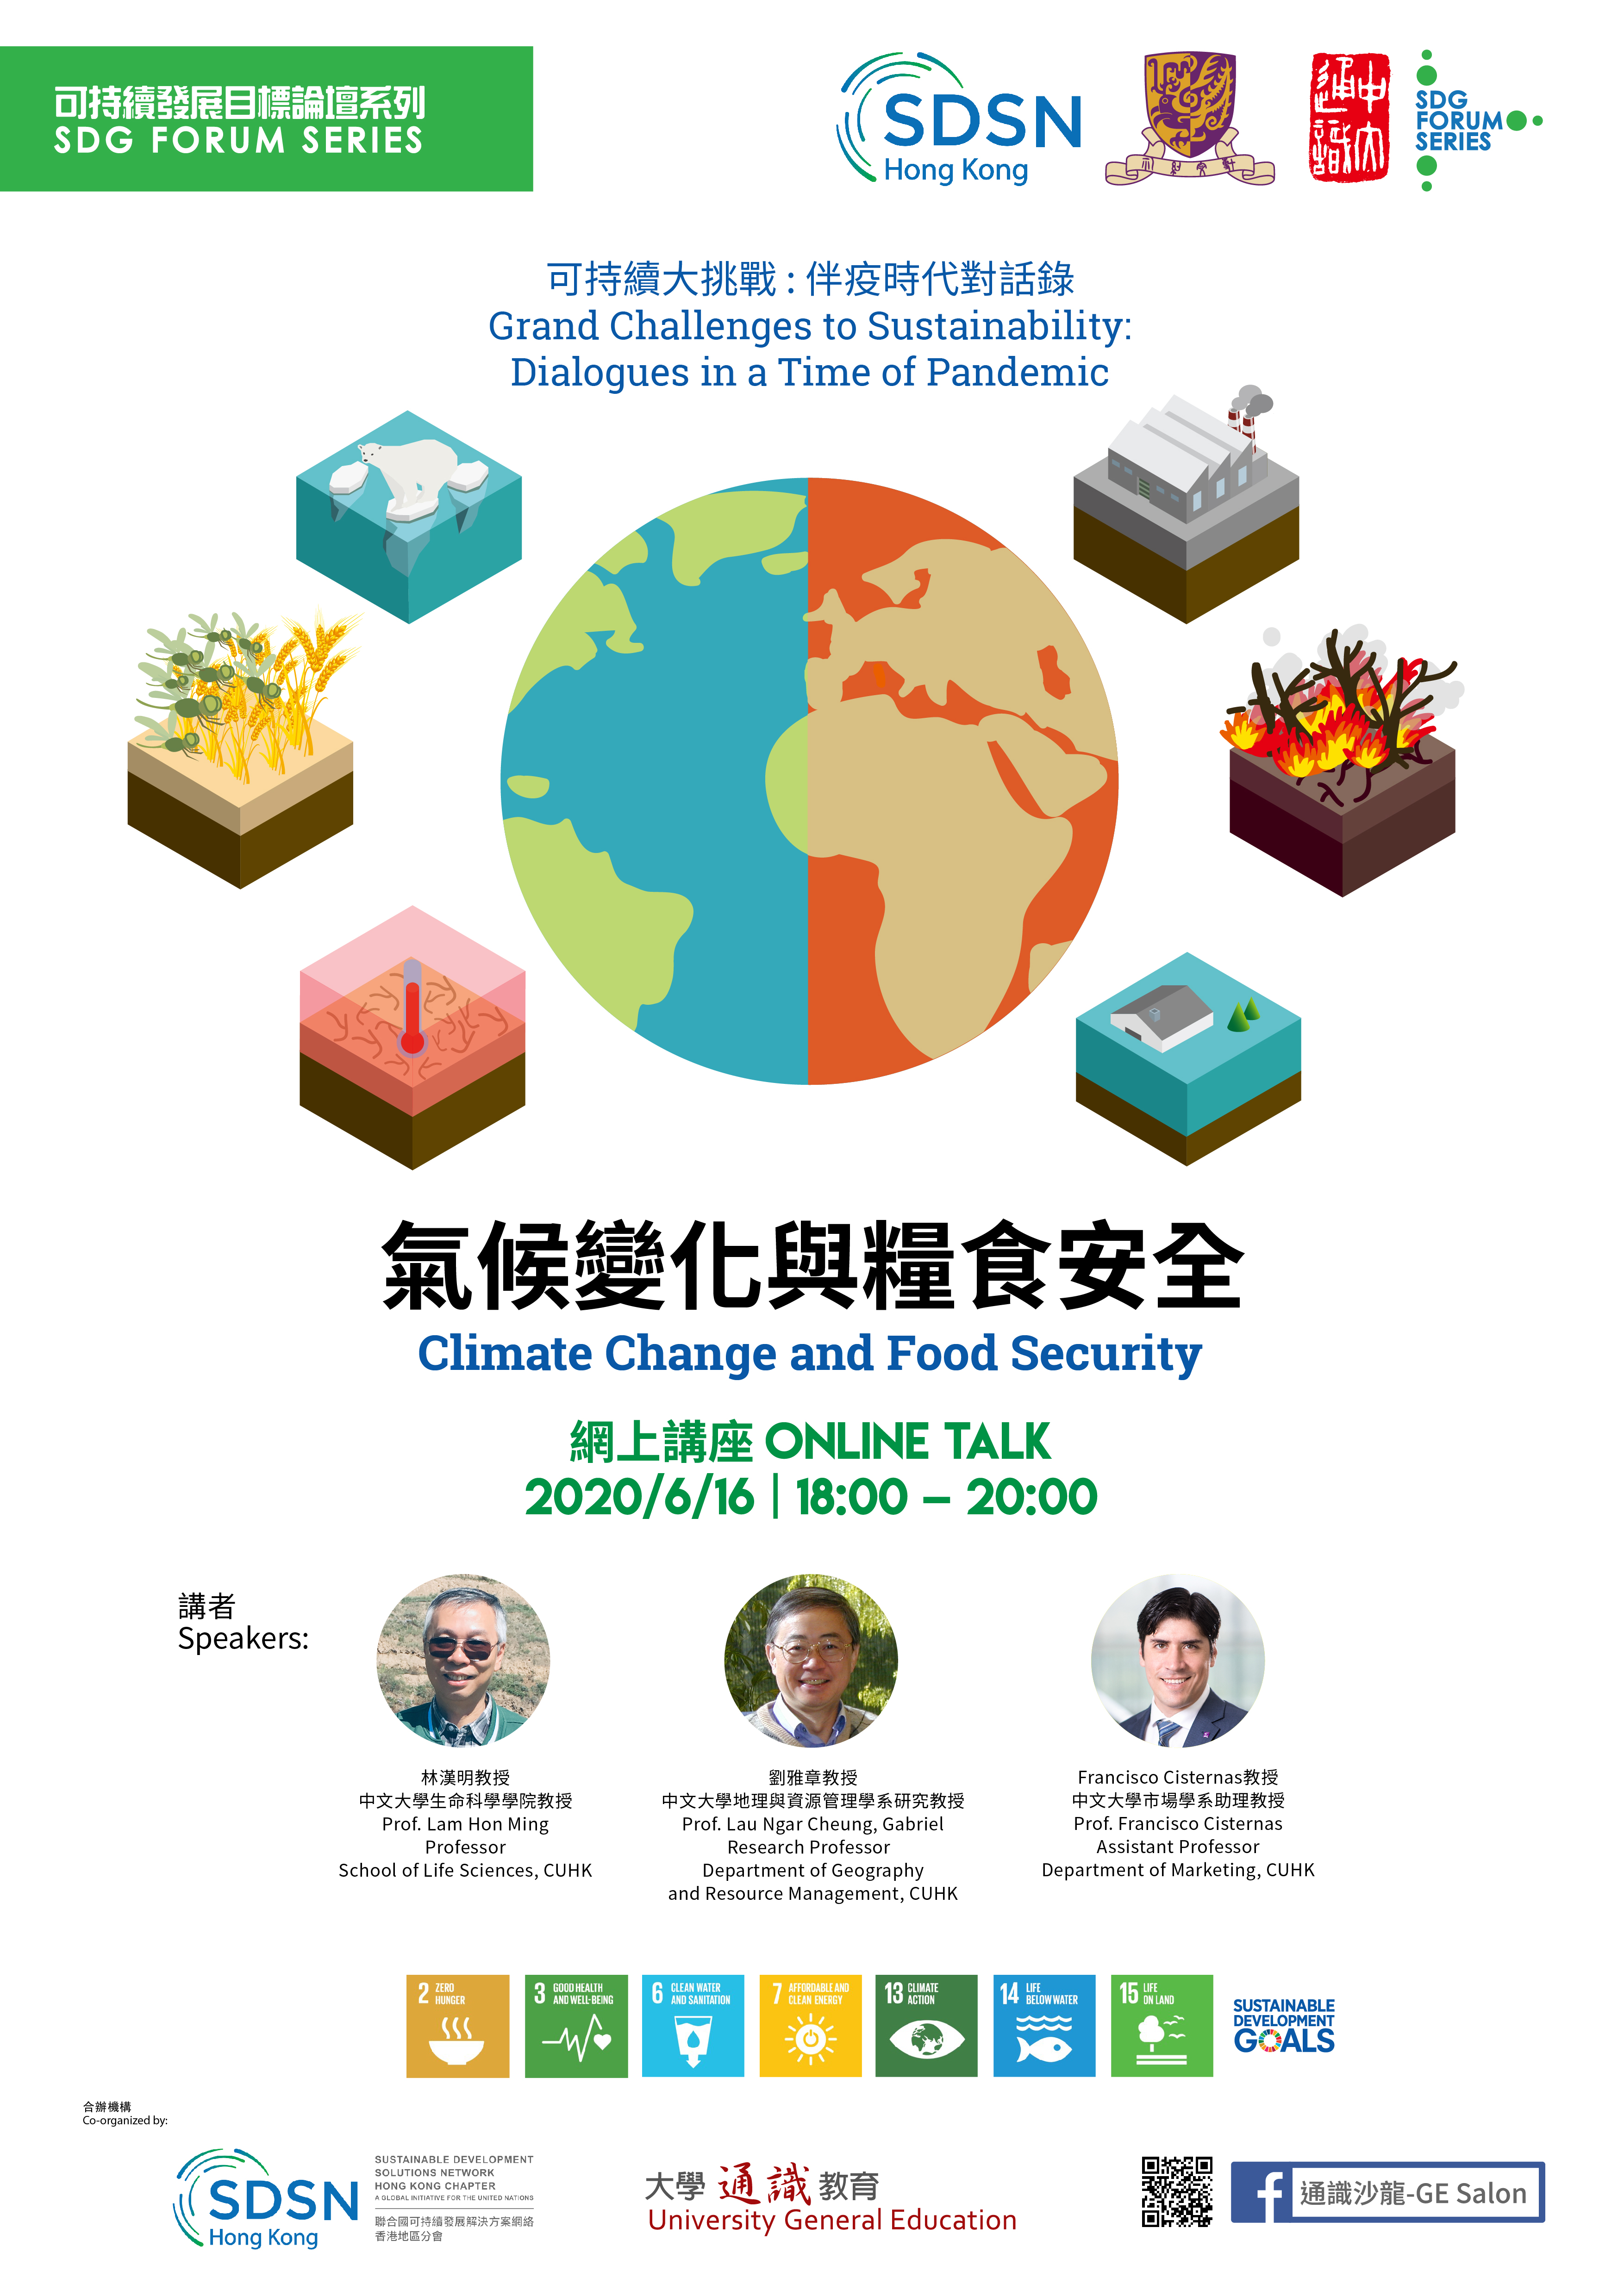 SDSNHK X GE SDG Forum 202006 session 3 Poster v3